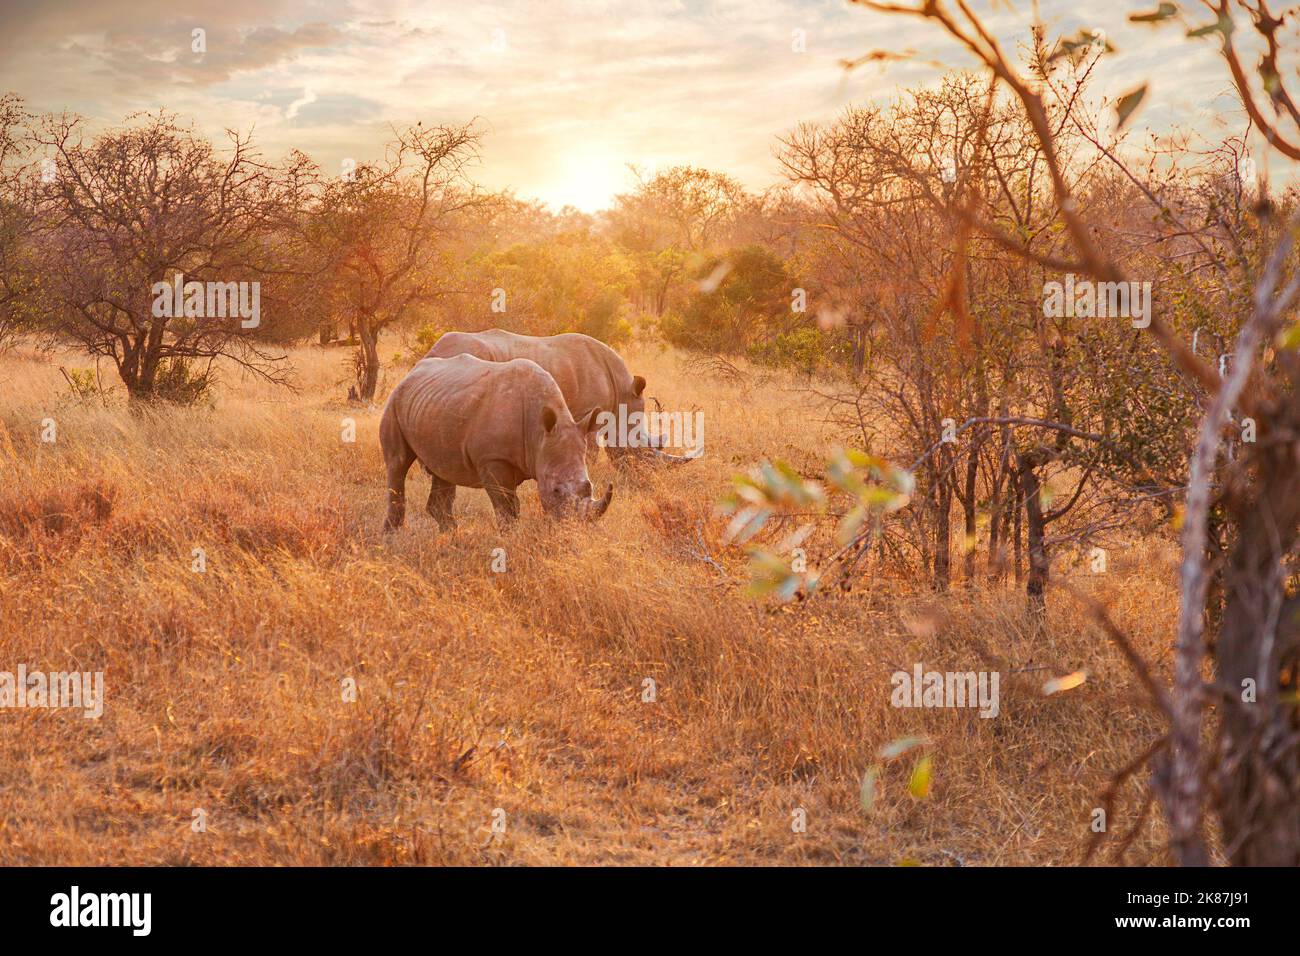 Par de rinocerontes negros en peligro de extinción que se encuentran juntos Foto de stock